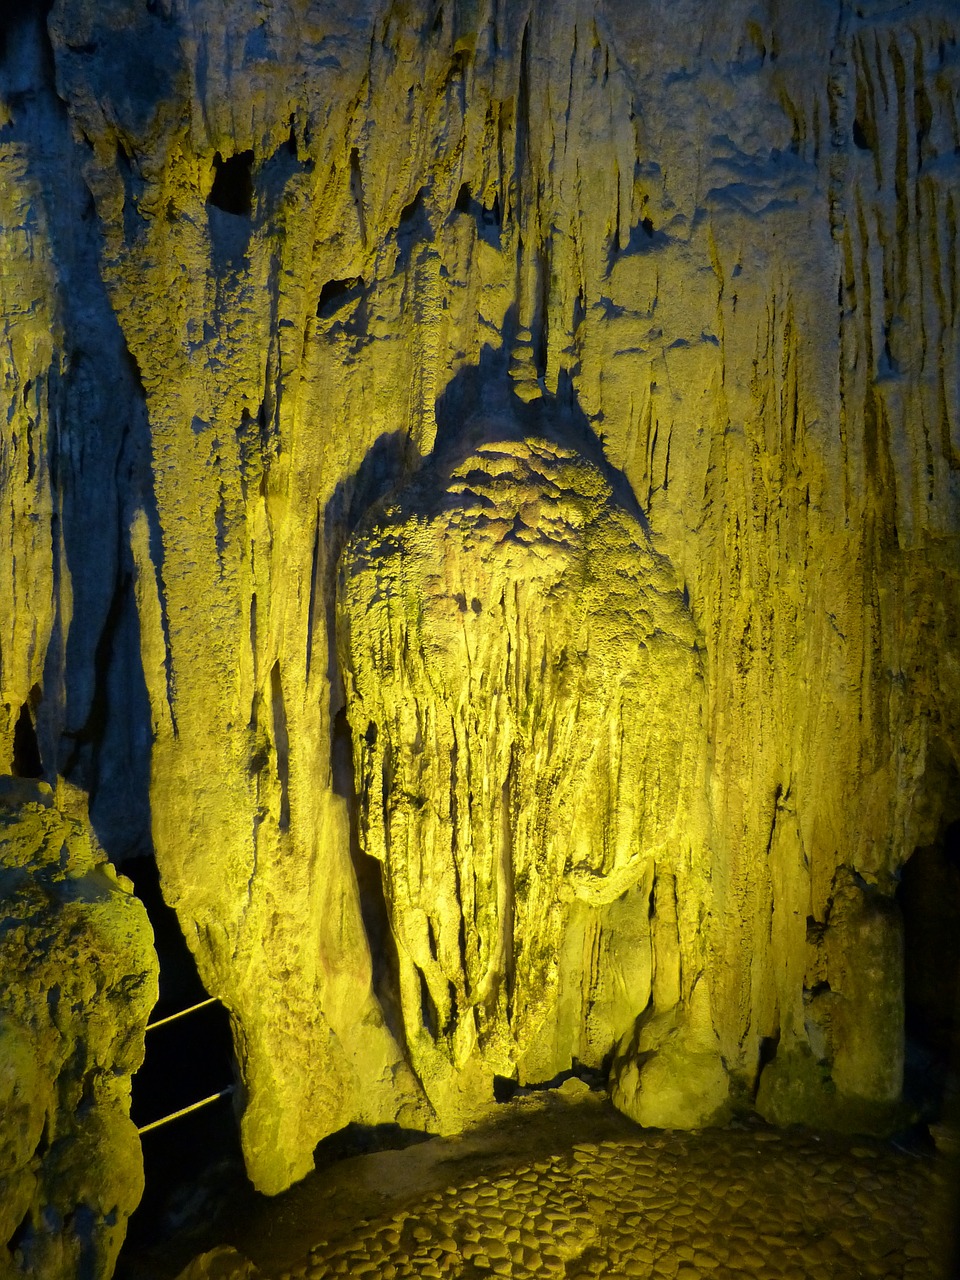 cave stalactite cave calcium deposits free photo